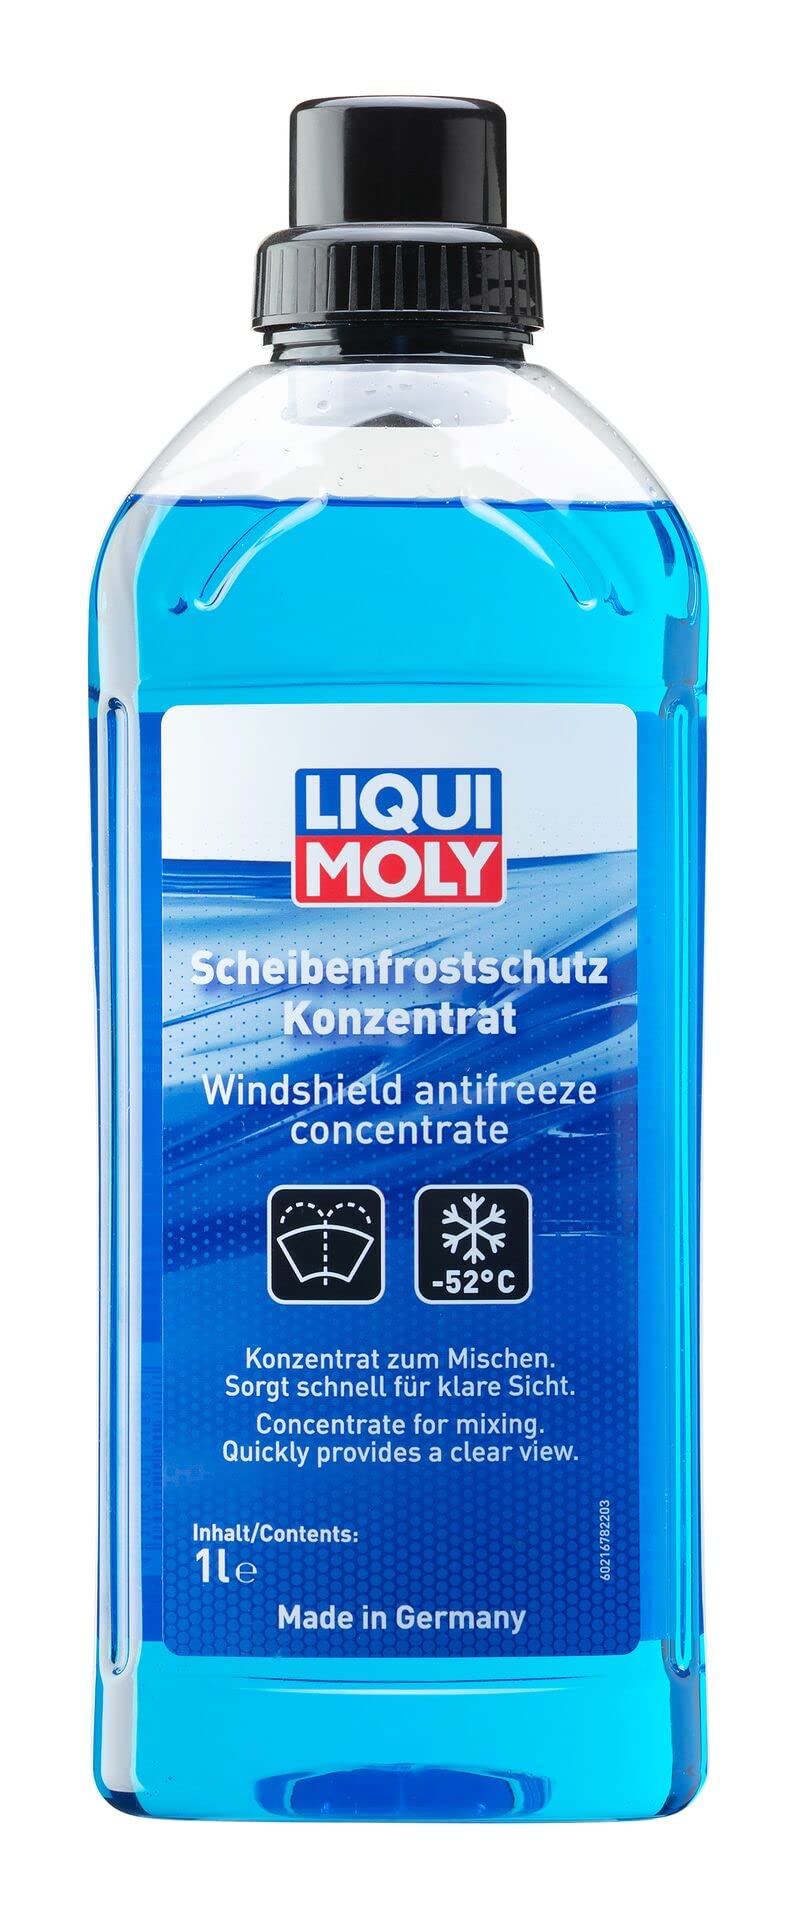 LIQUI MOLY Scheibenfrostschutz Konzentrat | 1 L | Winterprodukt | Wischwasserzusatz | Art.-Nr.: 21678 von Liqui Moly